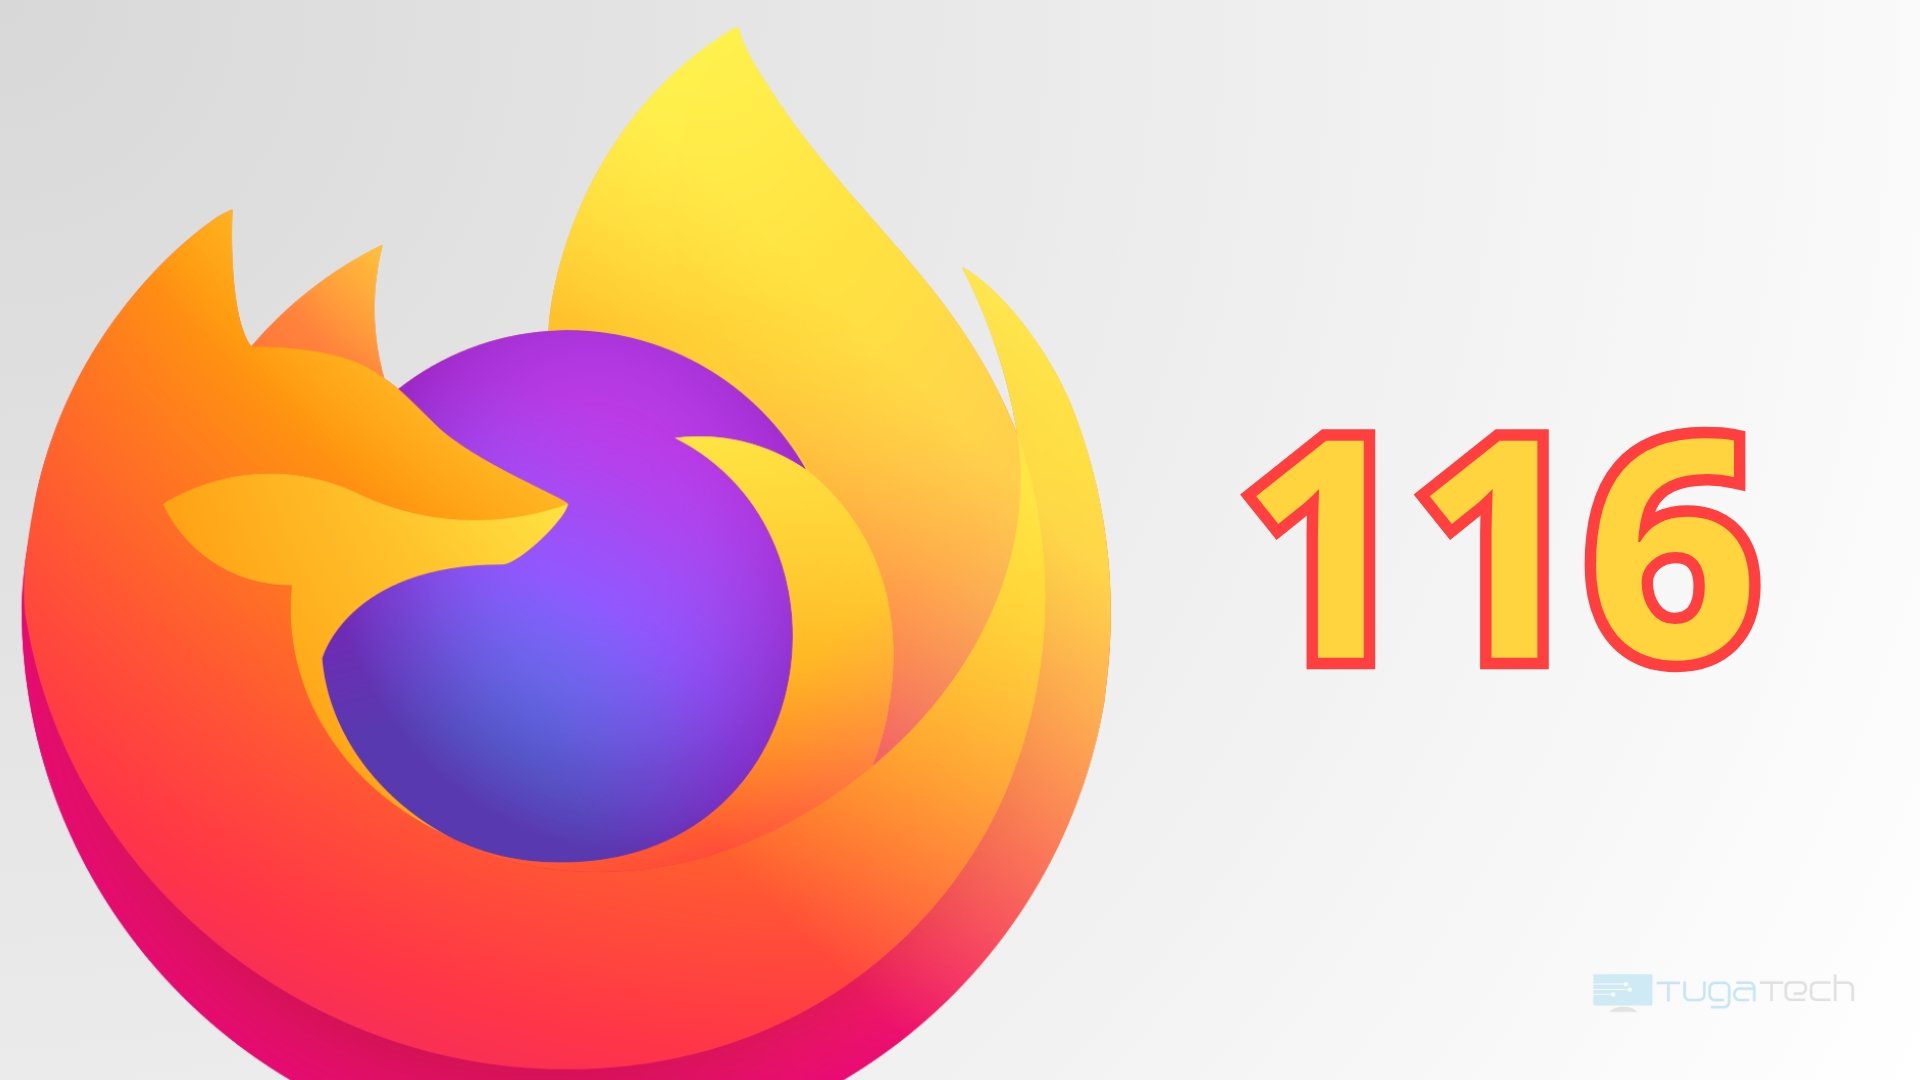 Firefox 116 logo do navegador